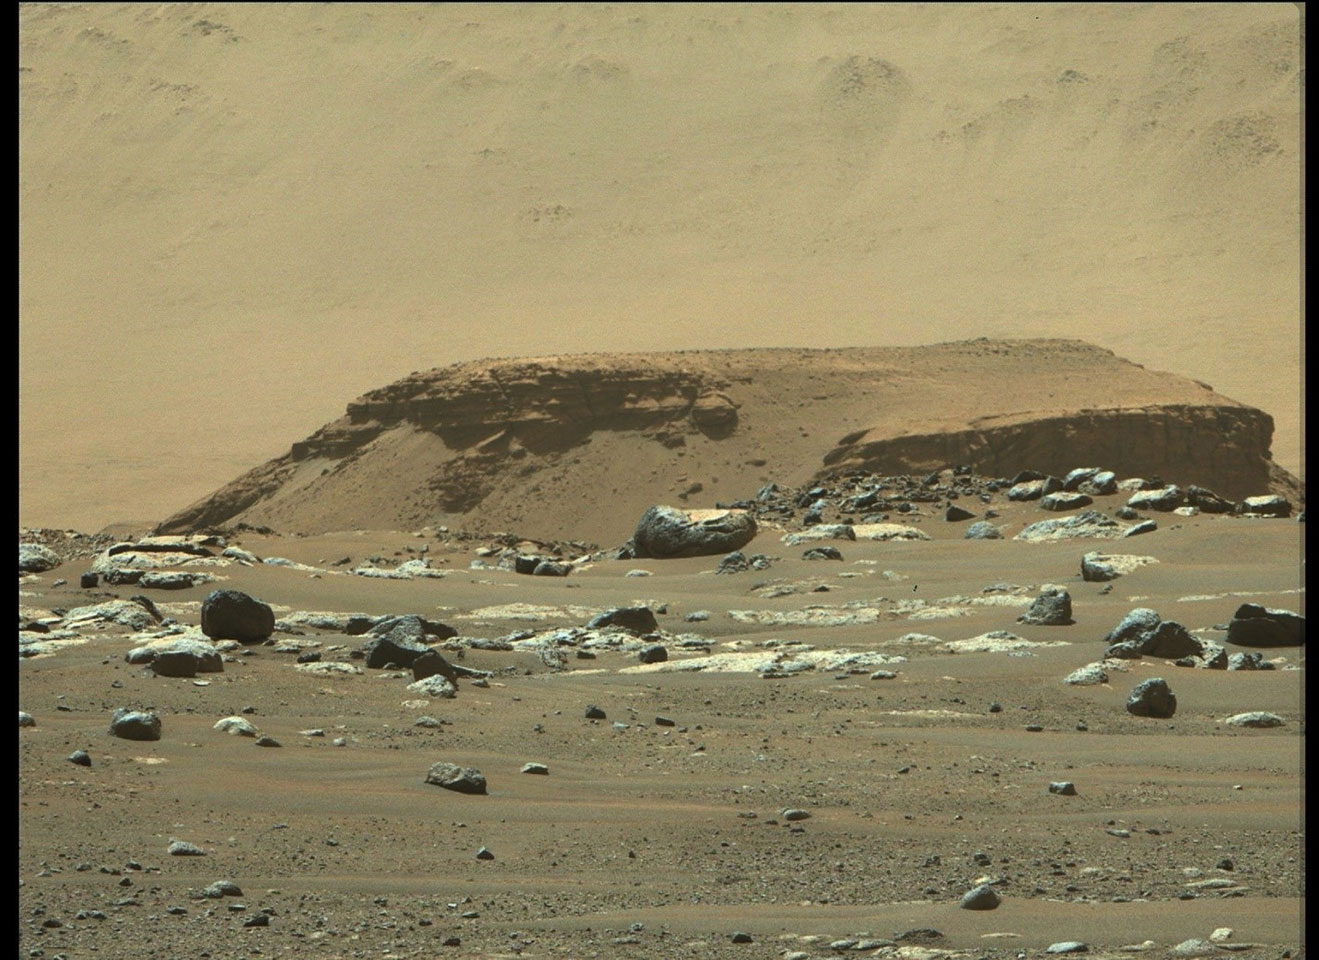 Le rover Perseverance montre des sédiments delta dans le cratère Jezero de Mars